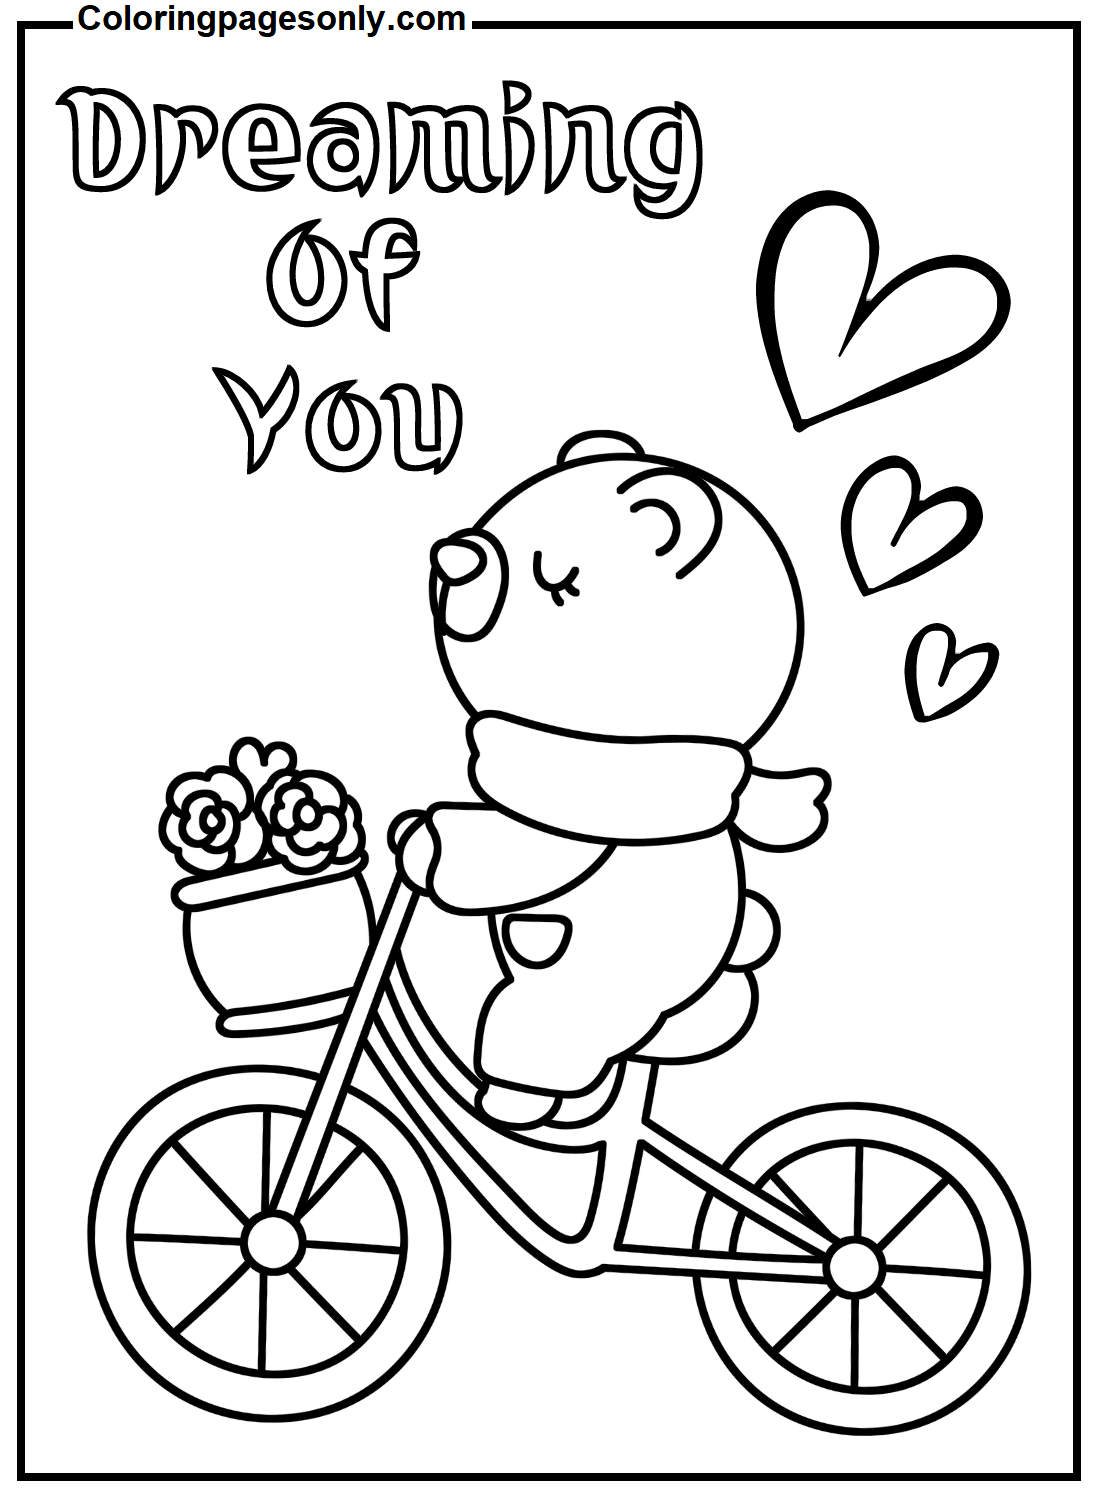 Valentinsbär mit Fahrrad vom Valentinstag